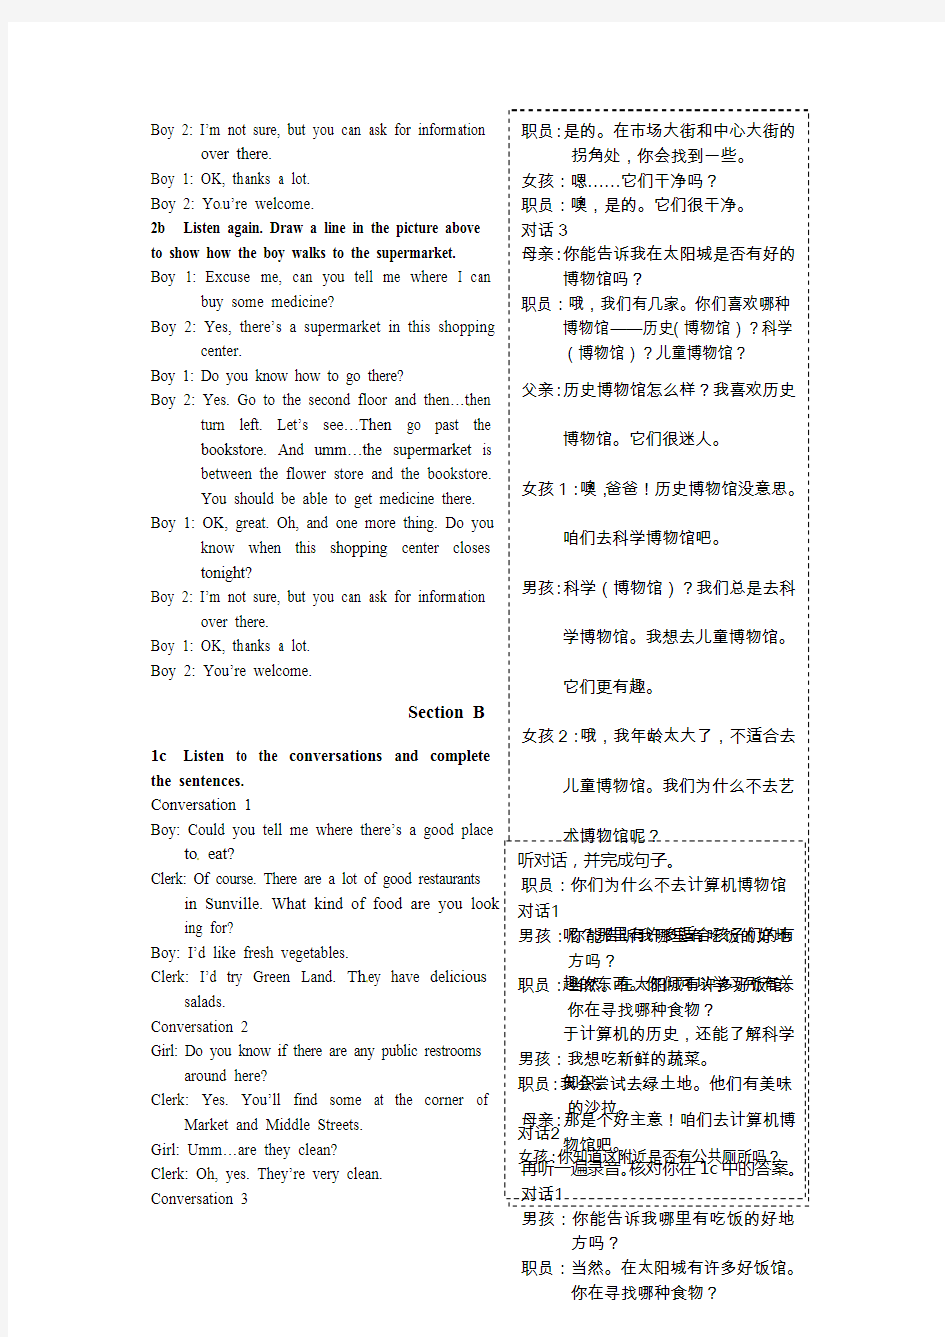 九年级英语(上)UNIT 3 教材听力原文及汉语翻译